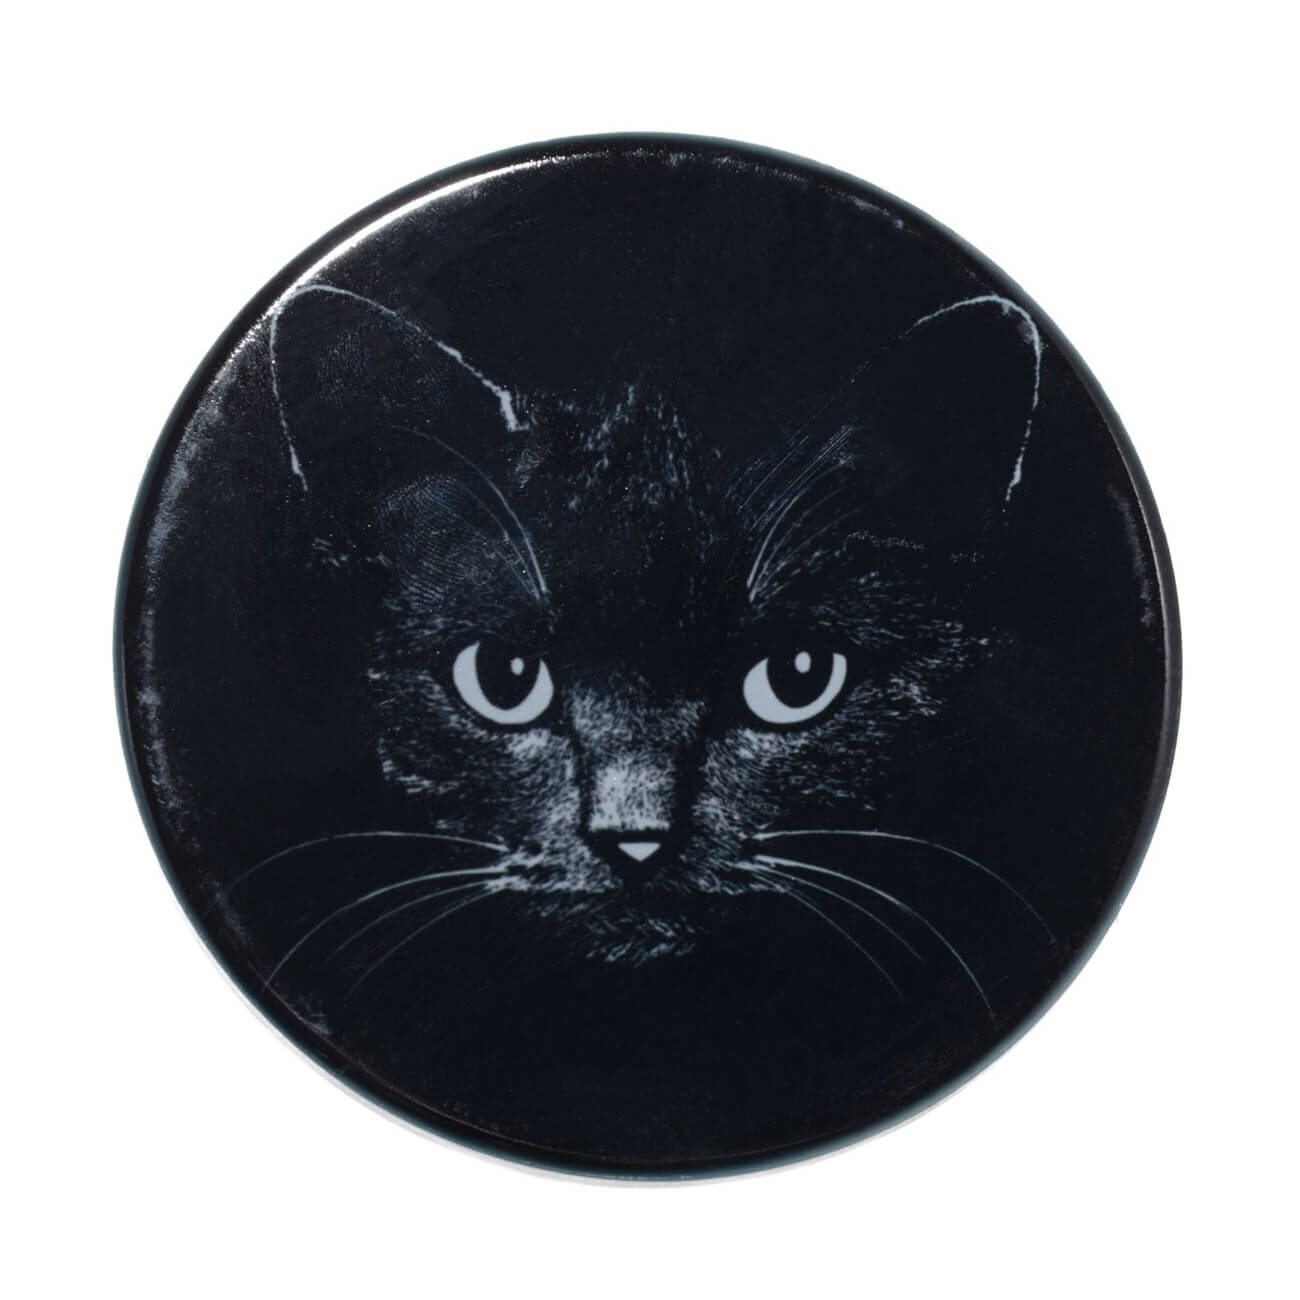 Подставка под кружку, 11x11 см, керамика/пробка, круглая, черная, Ночной кот, Cat night подставка под авто 3 т ae